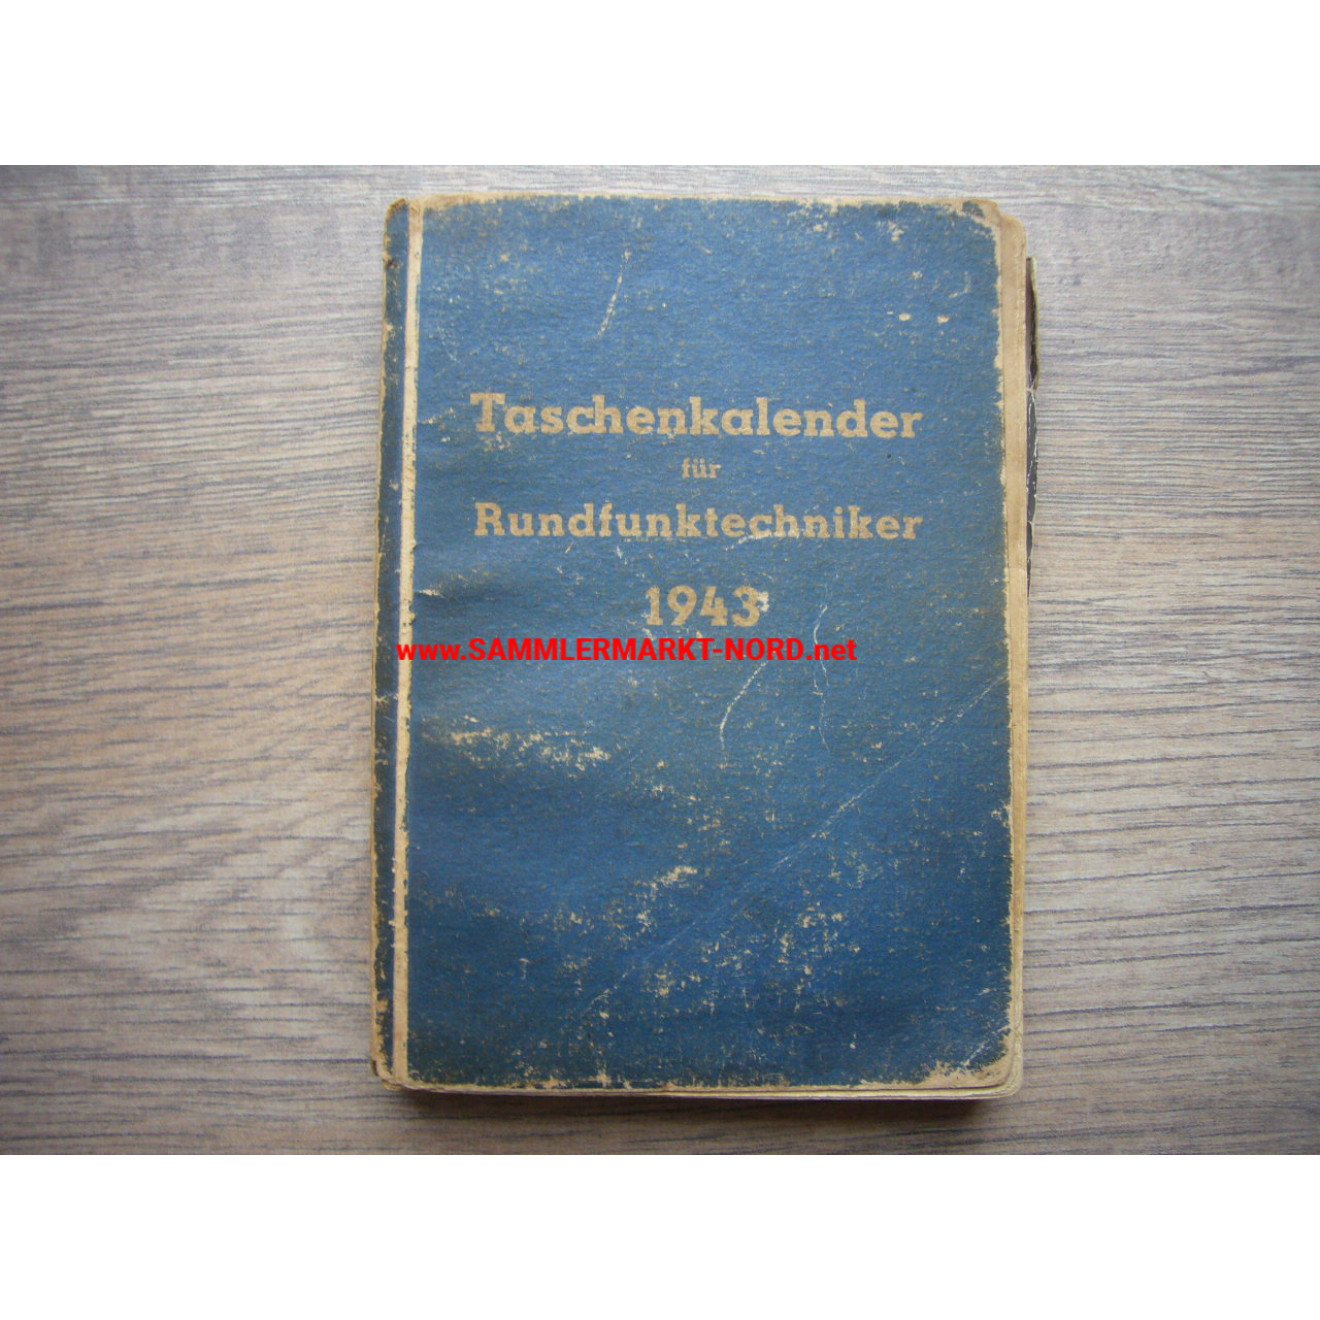 Taschenkalender für Rundfunktechniker 1943